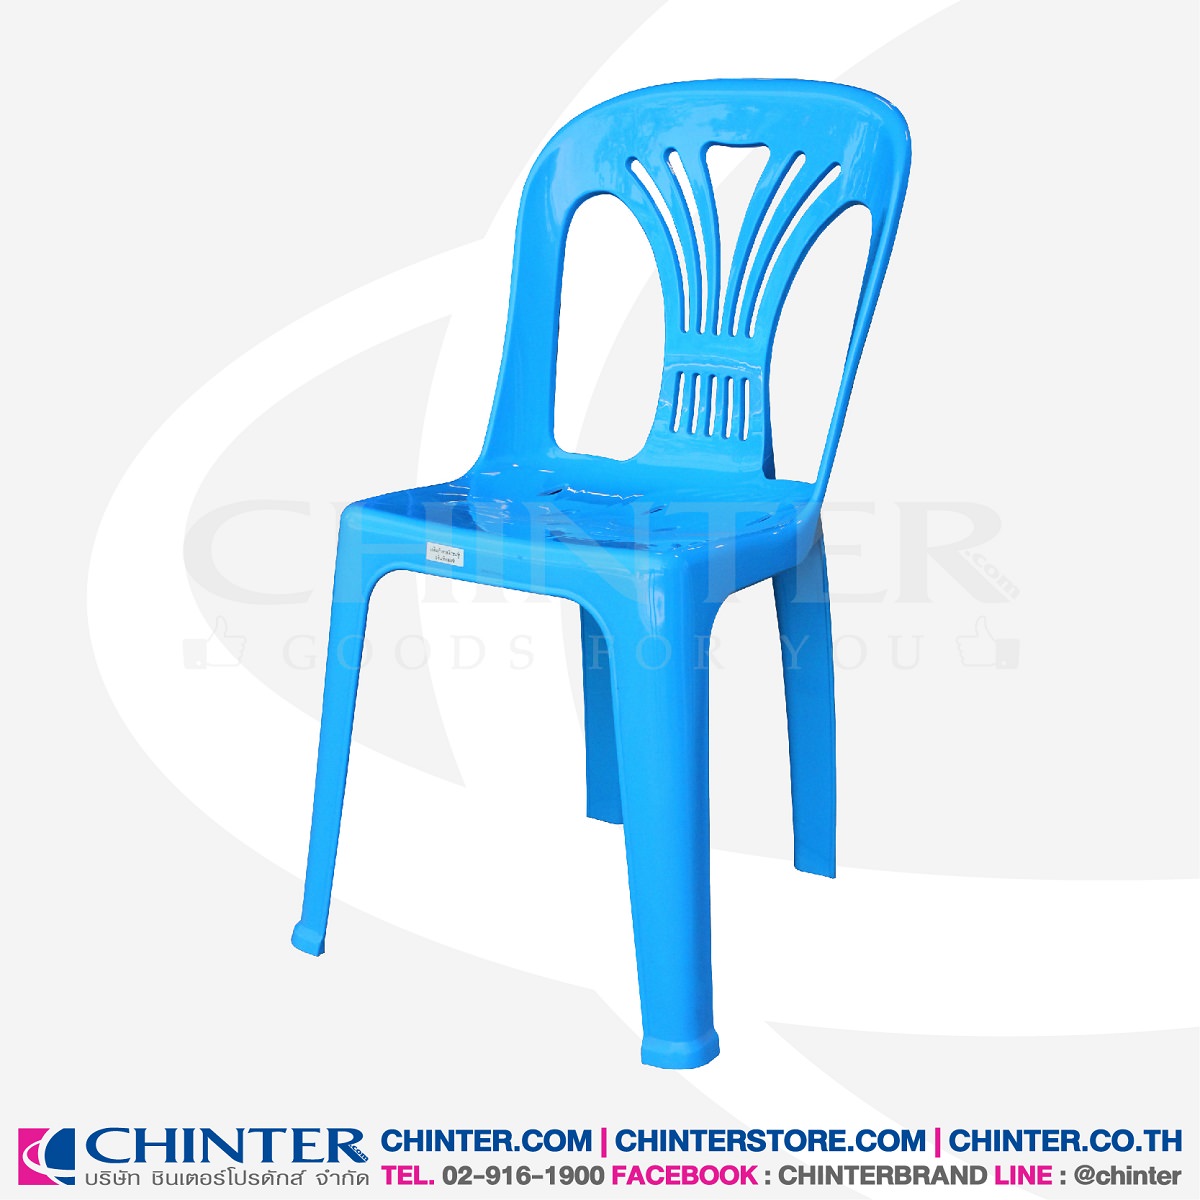 U-0001 เก้าอี้พลาสติก ขนาด 480x455x810 mm. รับน้ำหนักได้ 80 กก.สกรีน/ไม่สกรีน